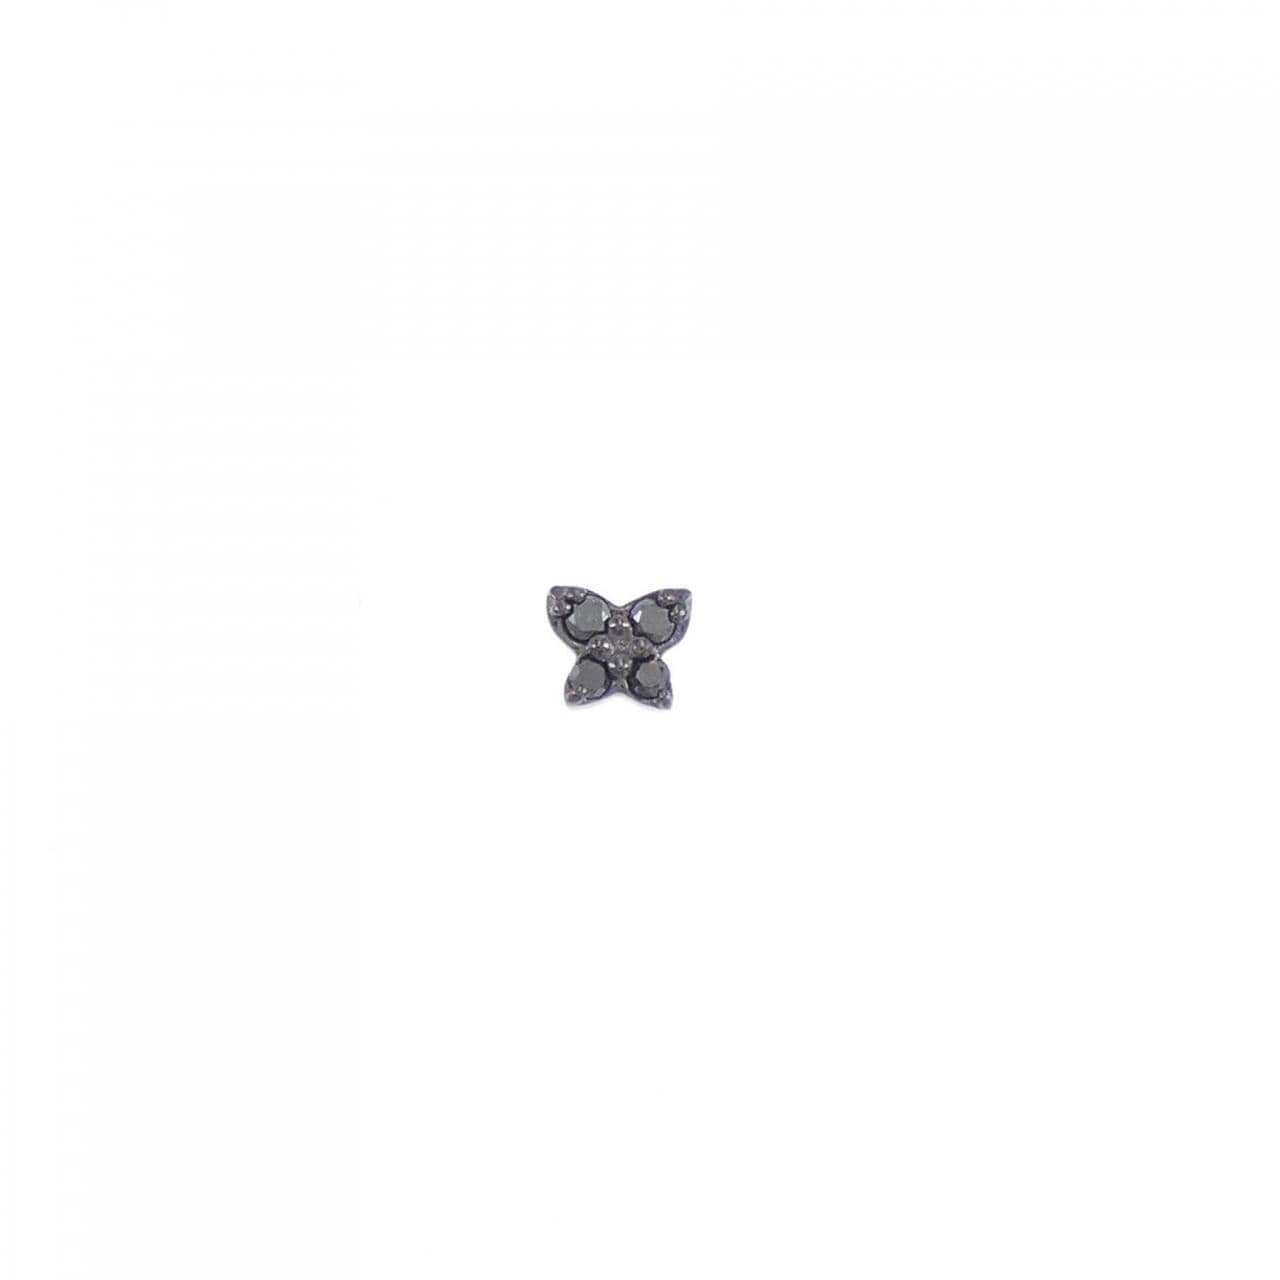 [BRAND NEW] K18BG/K18YG Diamond Earrings 0.02CT One Ear